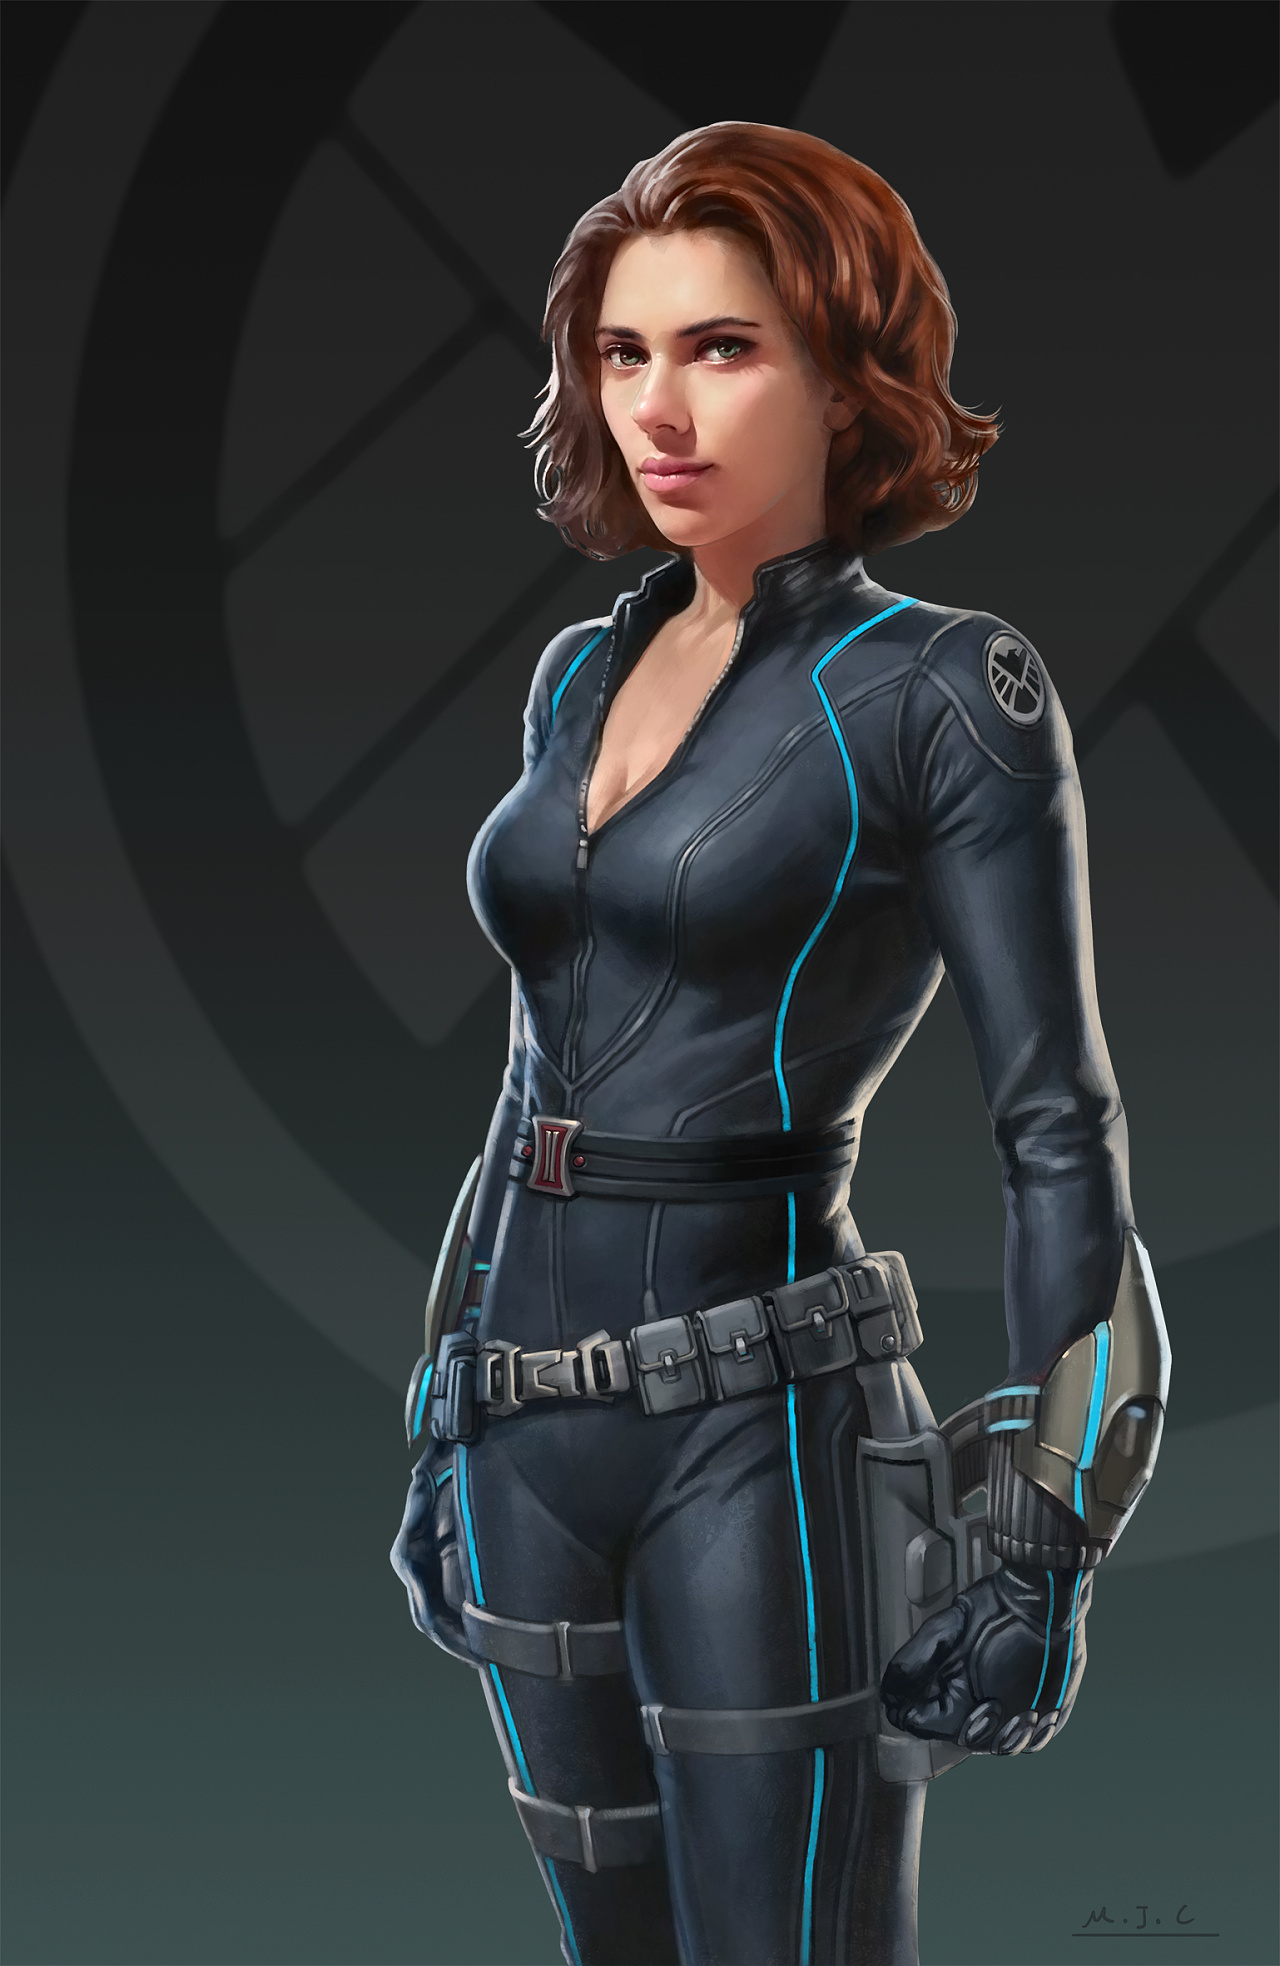 Free download Scarlett Johansson Wallpaper Black Widow Avengers ...